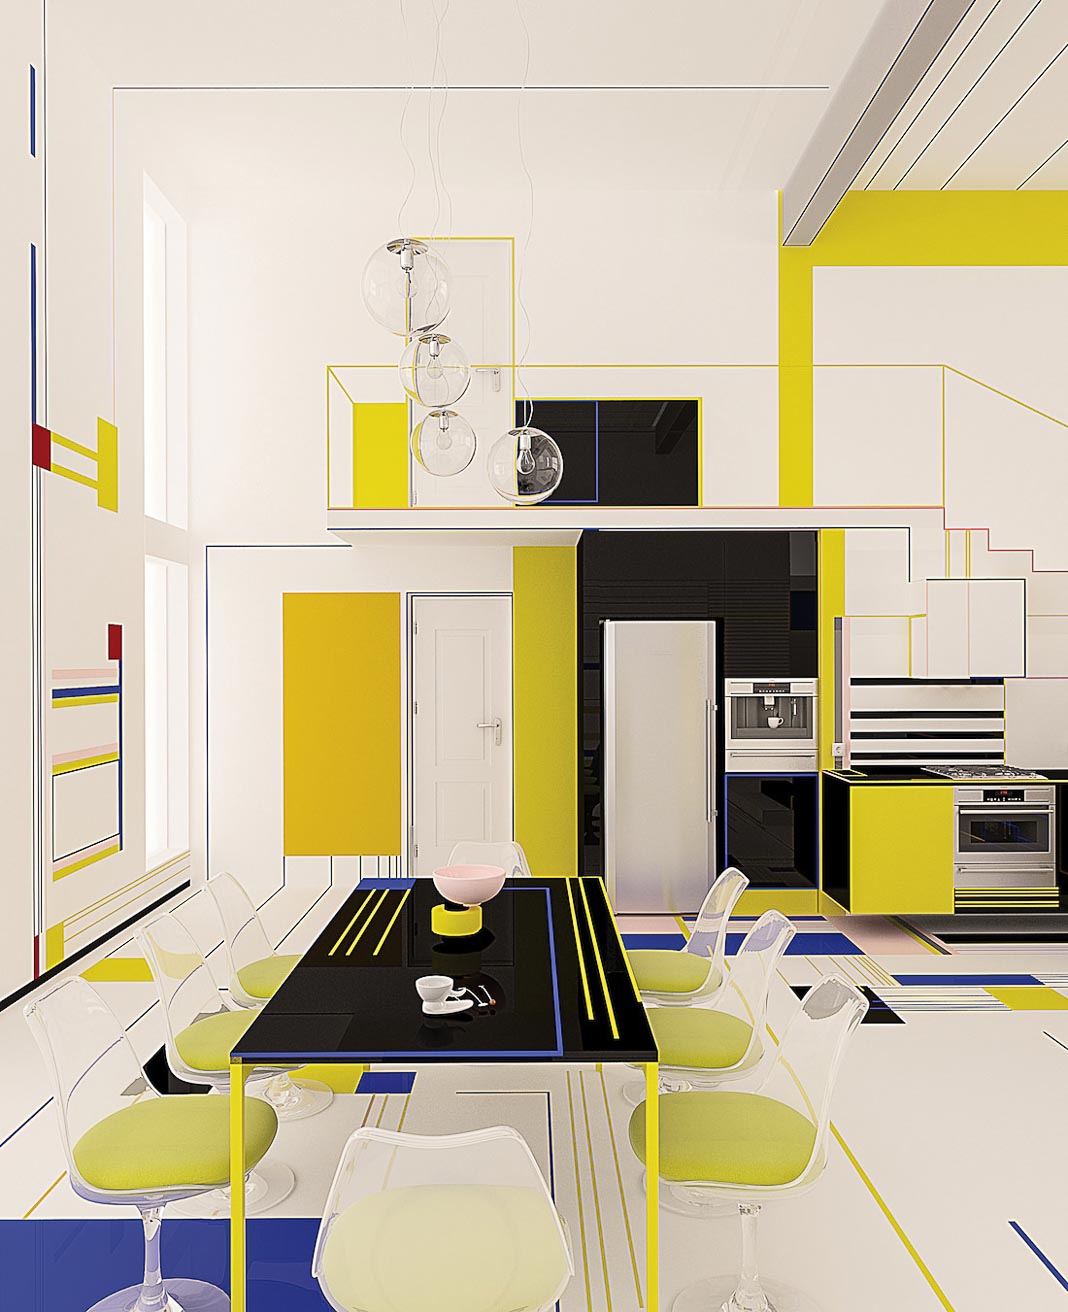 Bữa điểm tâm với Mondrian - Sống với sắc màu Piet Mondrian 16